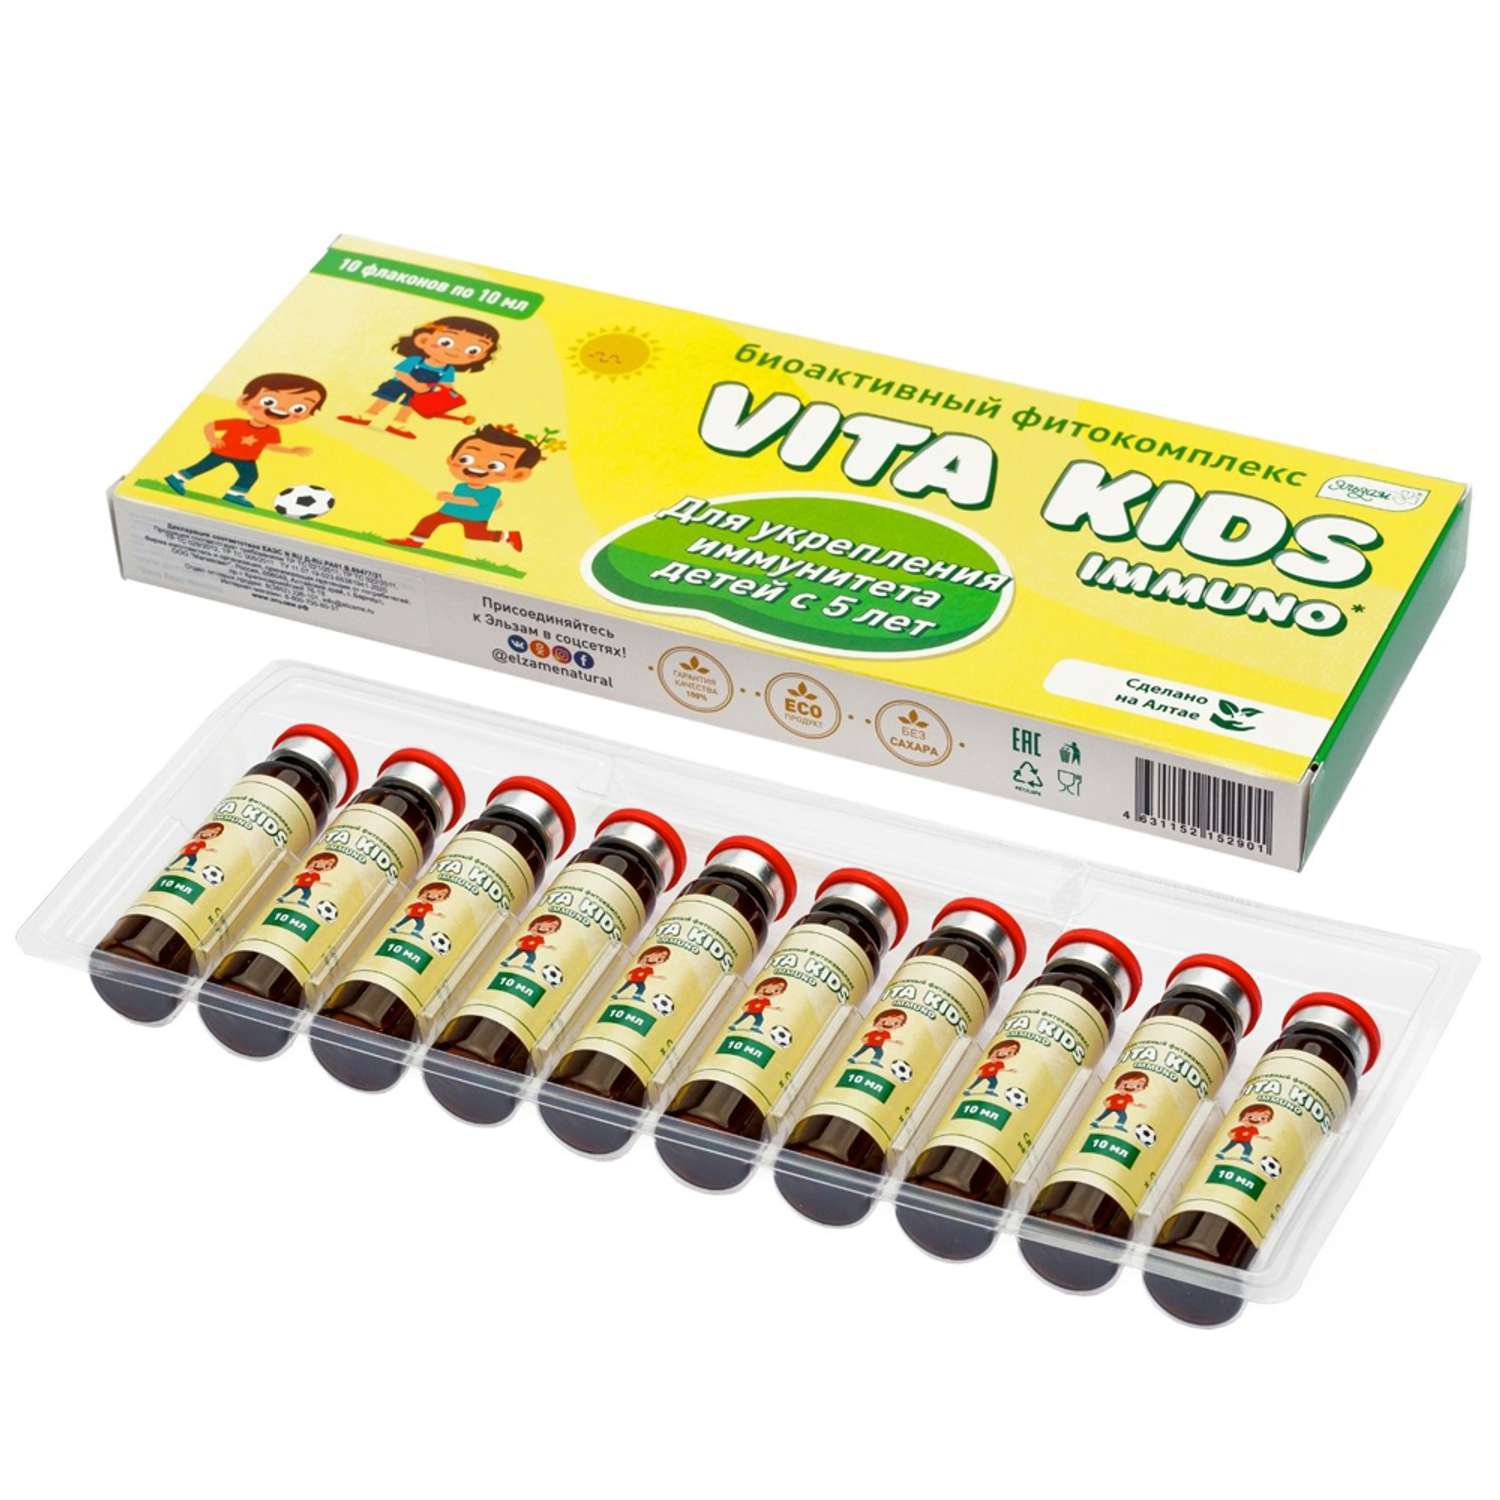 Фитокомплекс Vita kids immuno Эльзам для иммунитета с витамином с 10 флаконов по 10 мл - фото 2